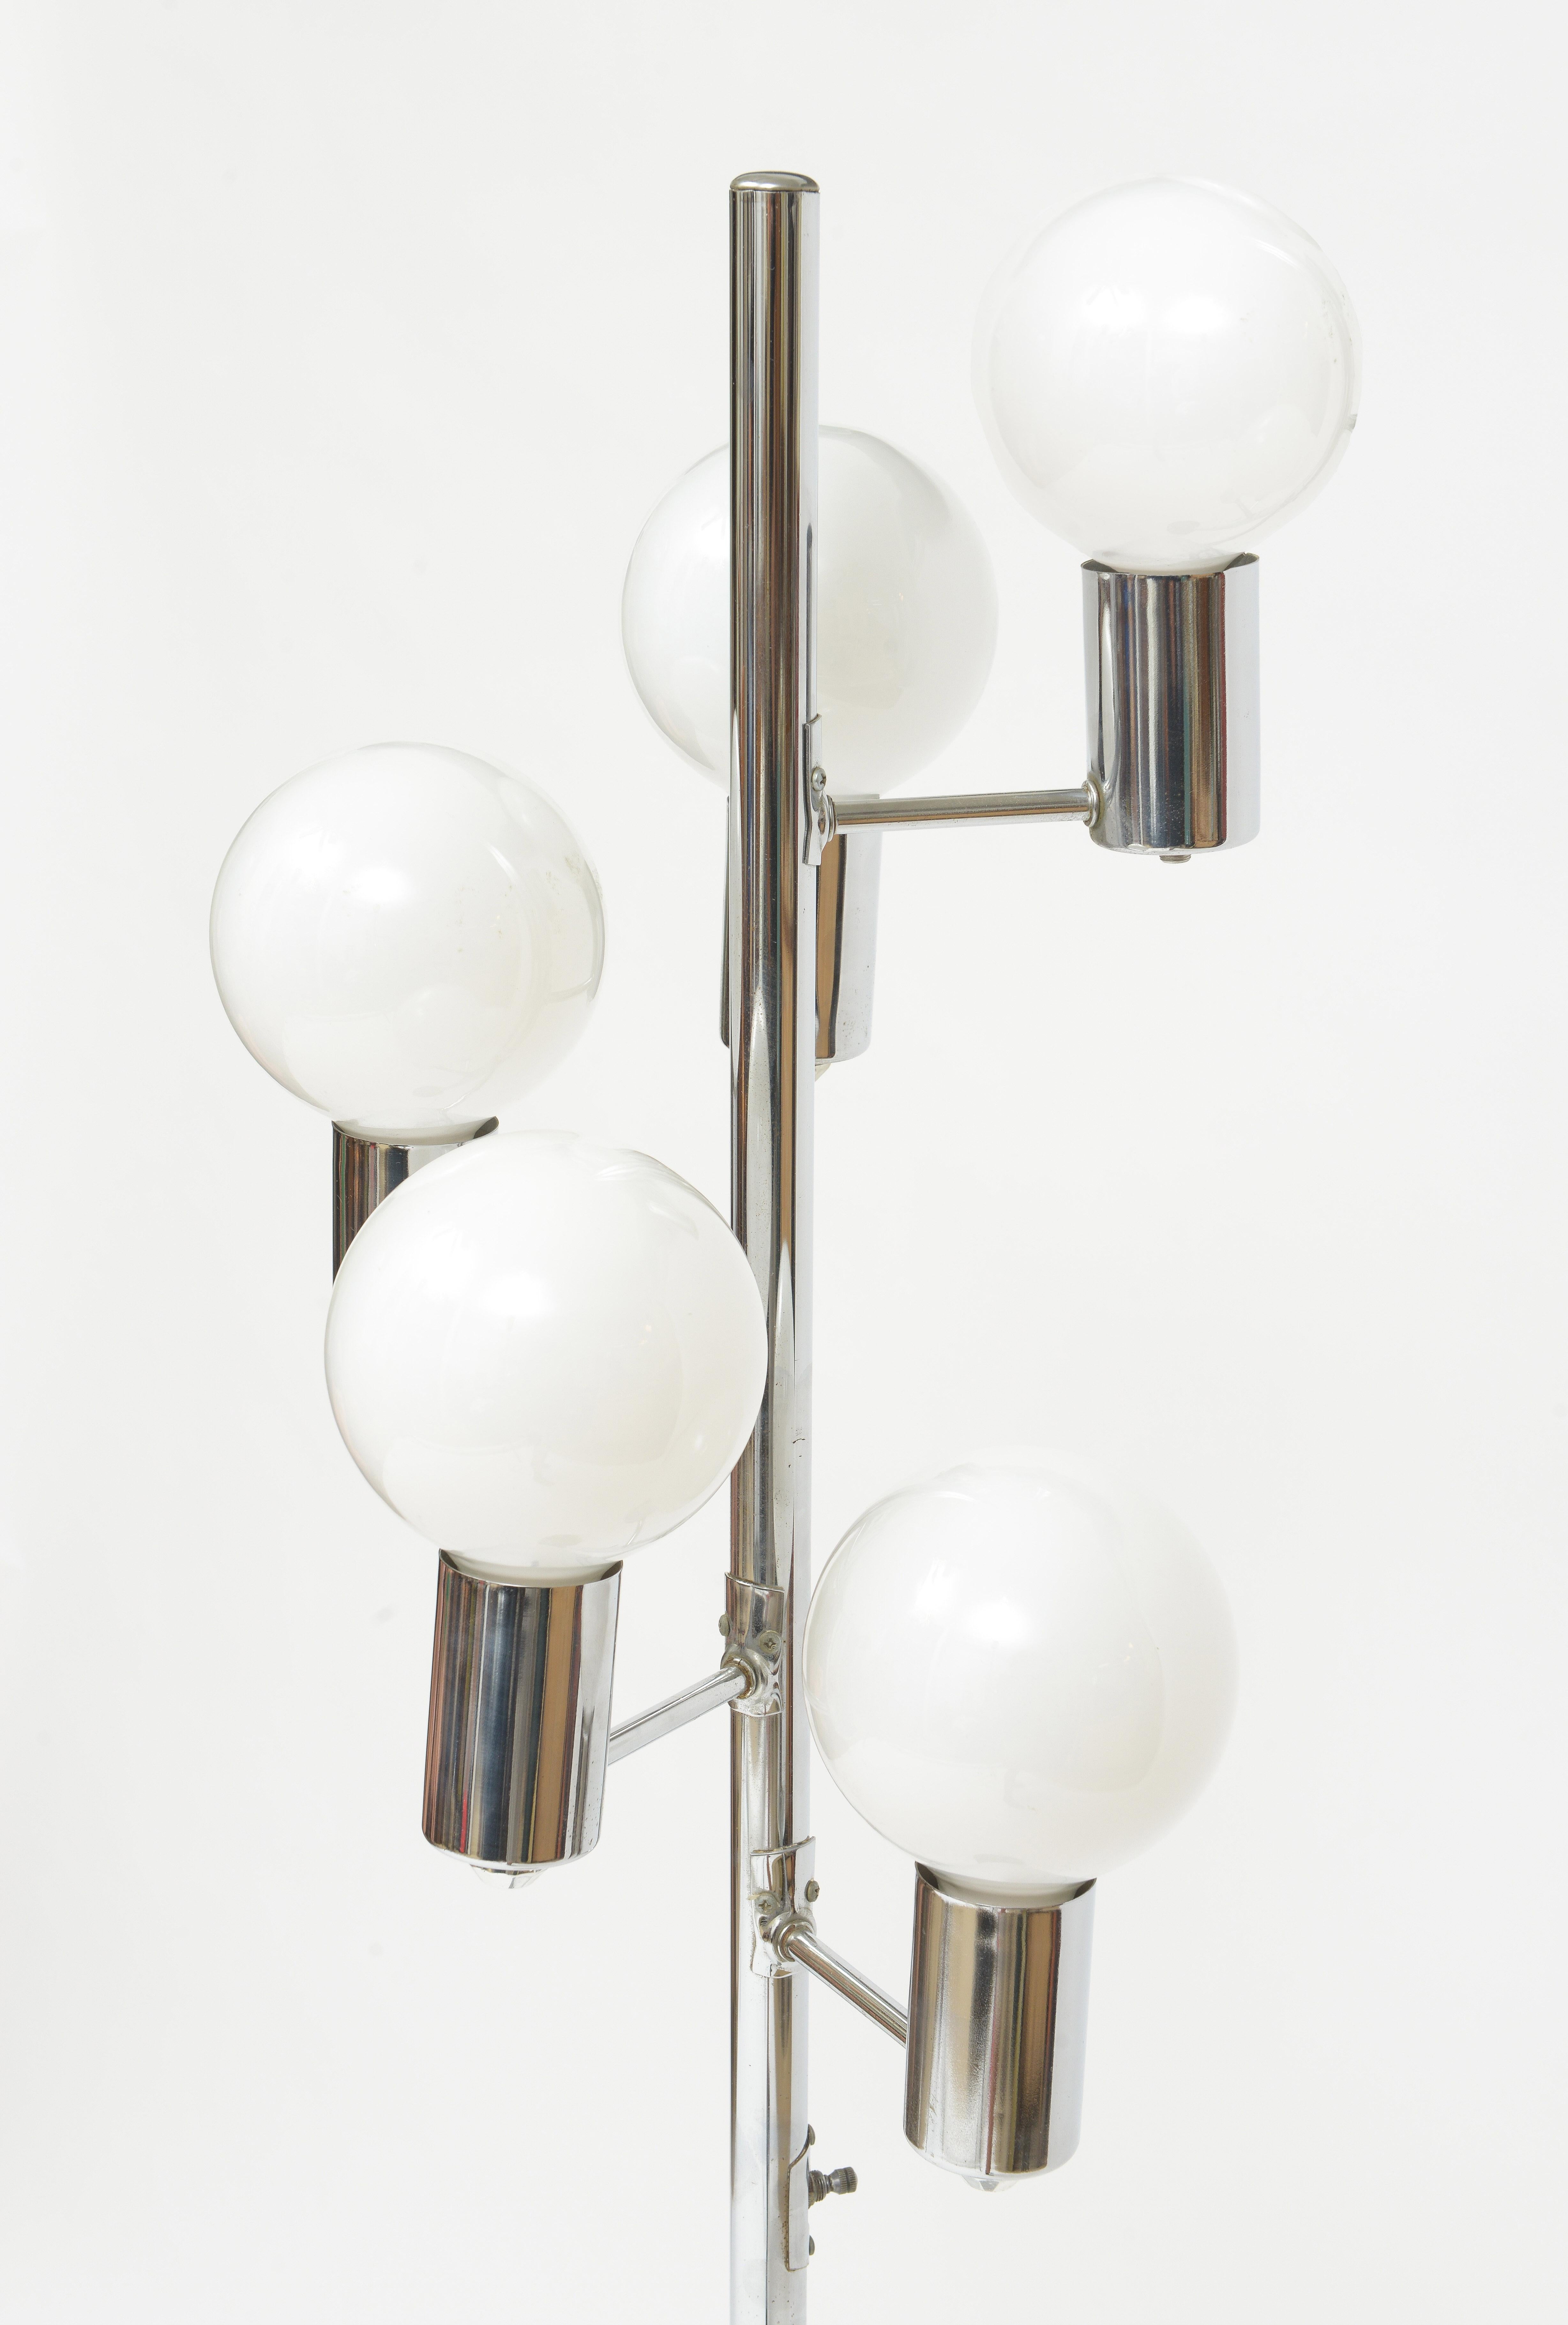 Lampadaire chromé avec cinq ampoules en verre blanc. Fabriqué dans les années 1970 (américain)